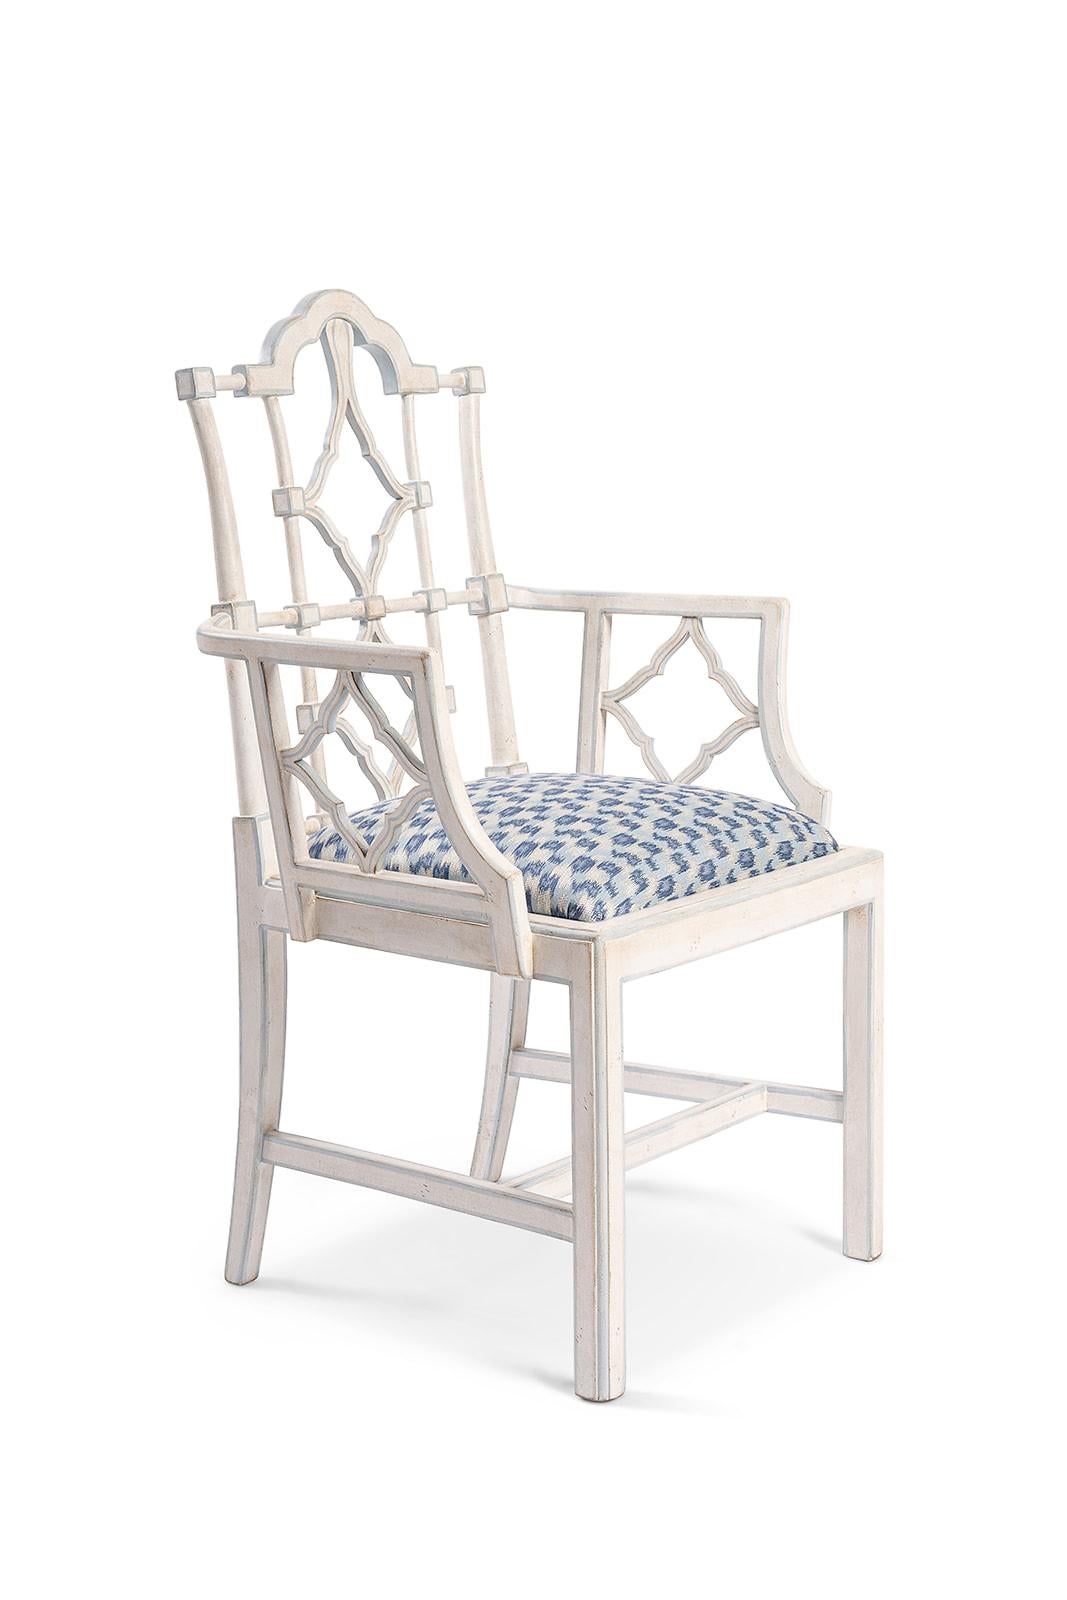 Aus unserer Collection'S für handbemalte Möbel stellen wir Ihnen den Faenza Sessel mit gepolsterter Sitzfläche vor.
Dieser makellose Sessel ist eine perfekte Mischung aus Ästhetik und handwerklichem Können. Die rechteckige, offene Rückenlehne ist